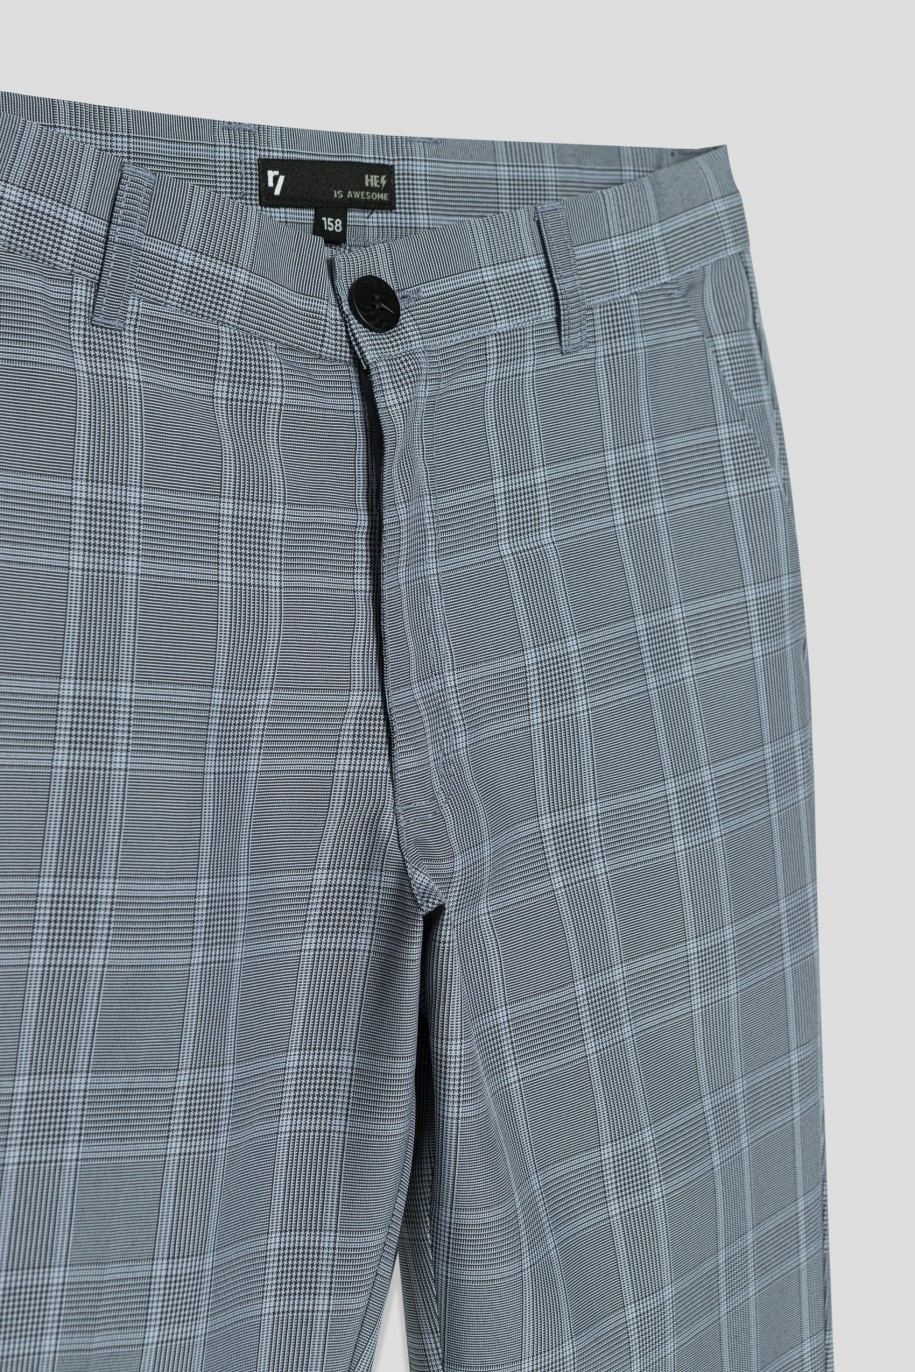 Eleganckie spodnie garniturowe w kratę dla chłopaka - 33594